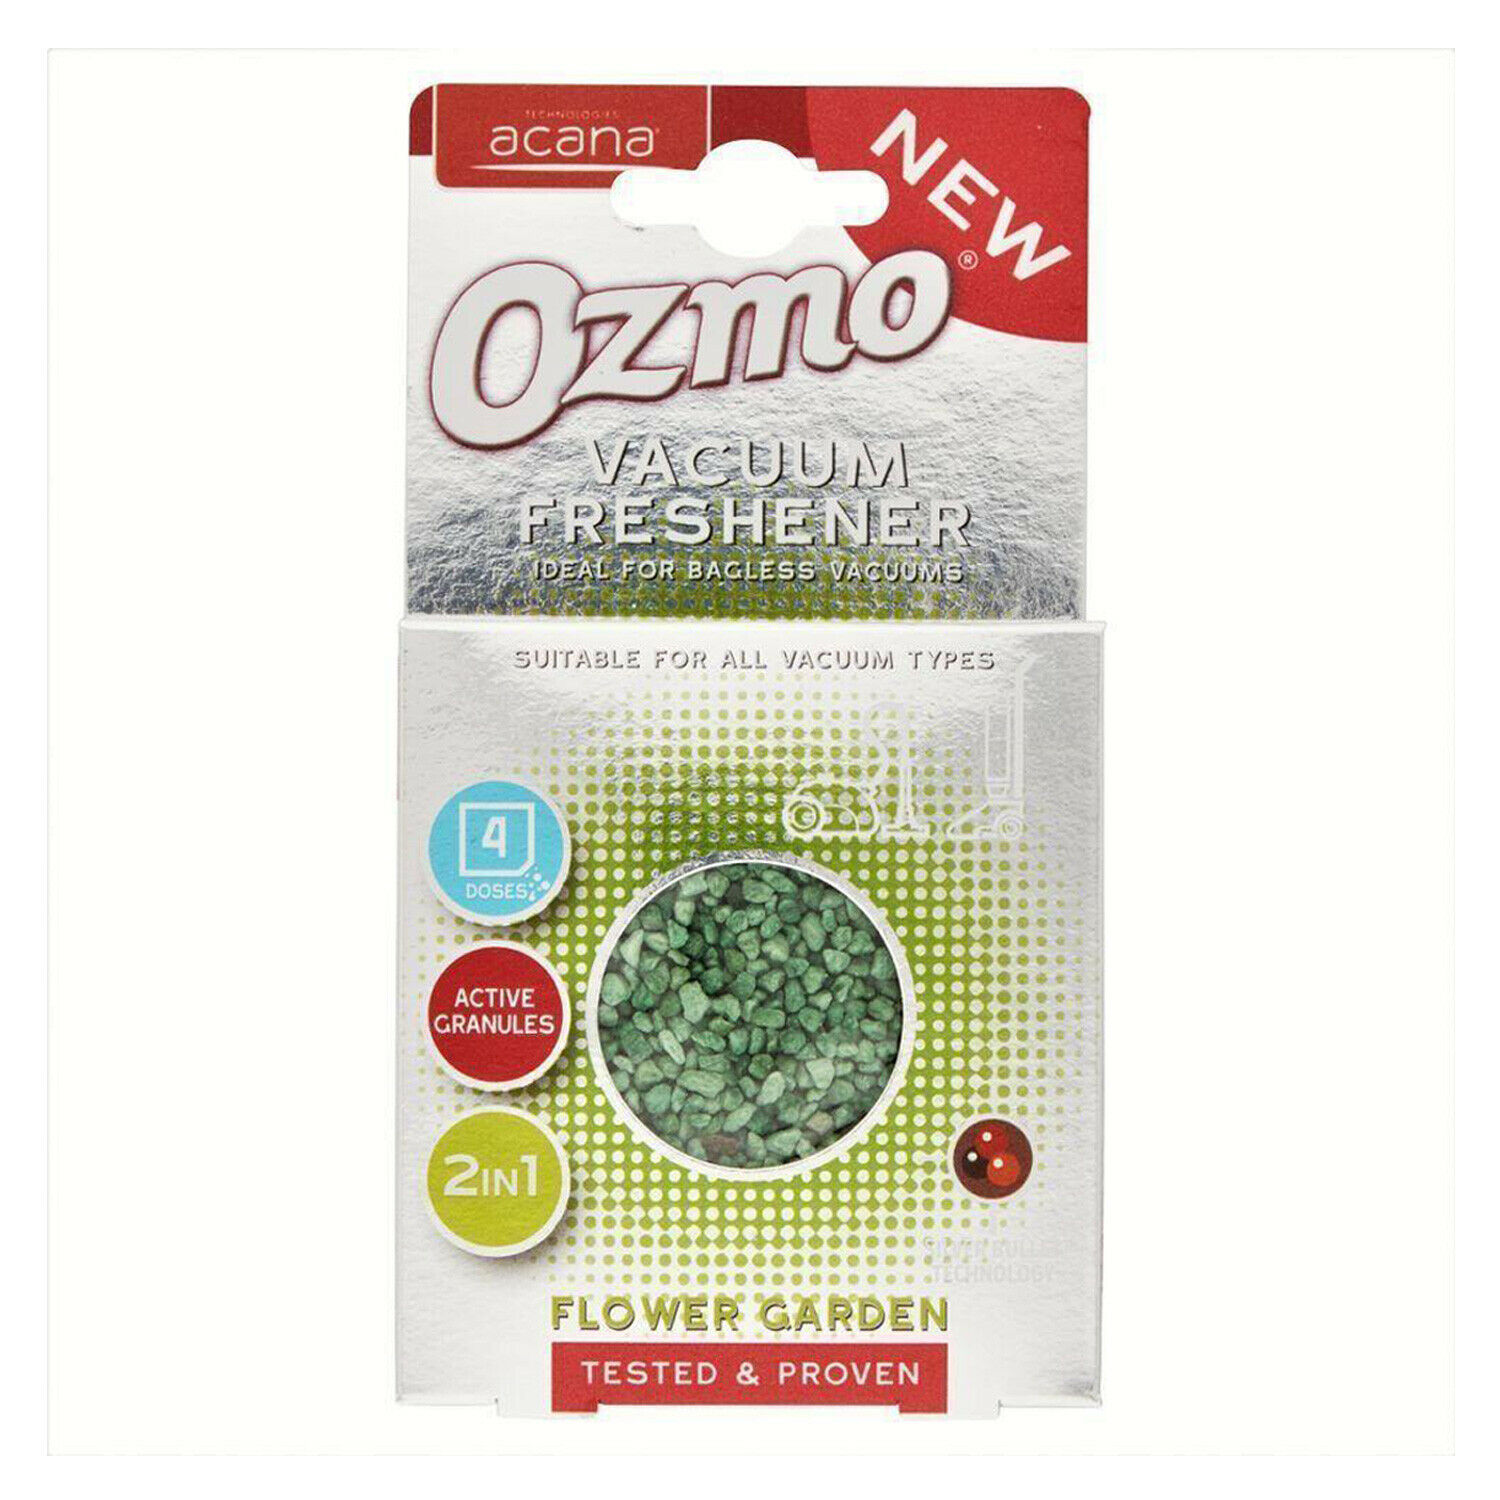 Ozmo Professional Natural Vacuum Freshener 4 Sachets